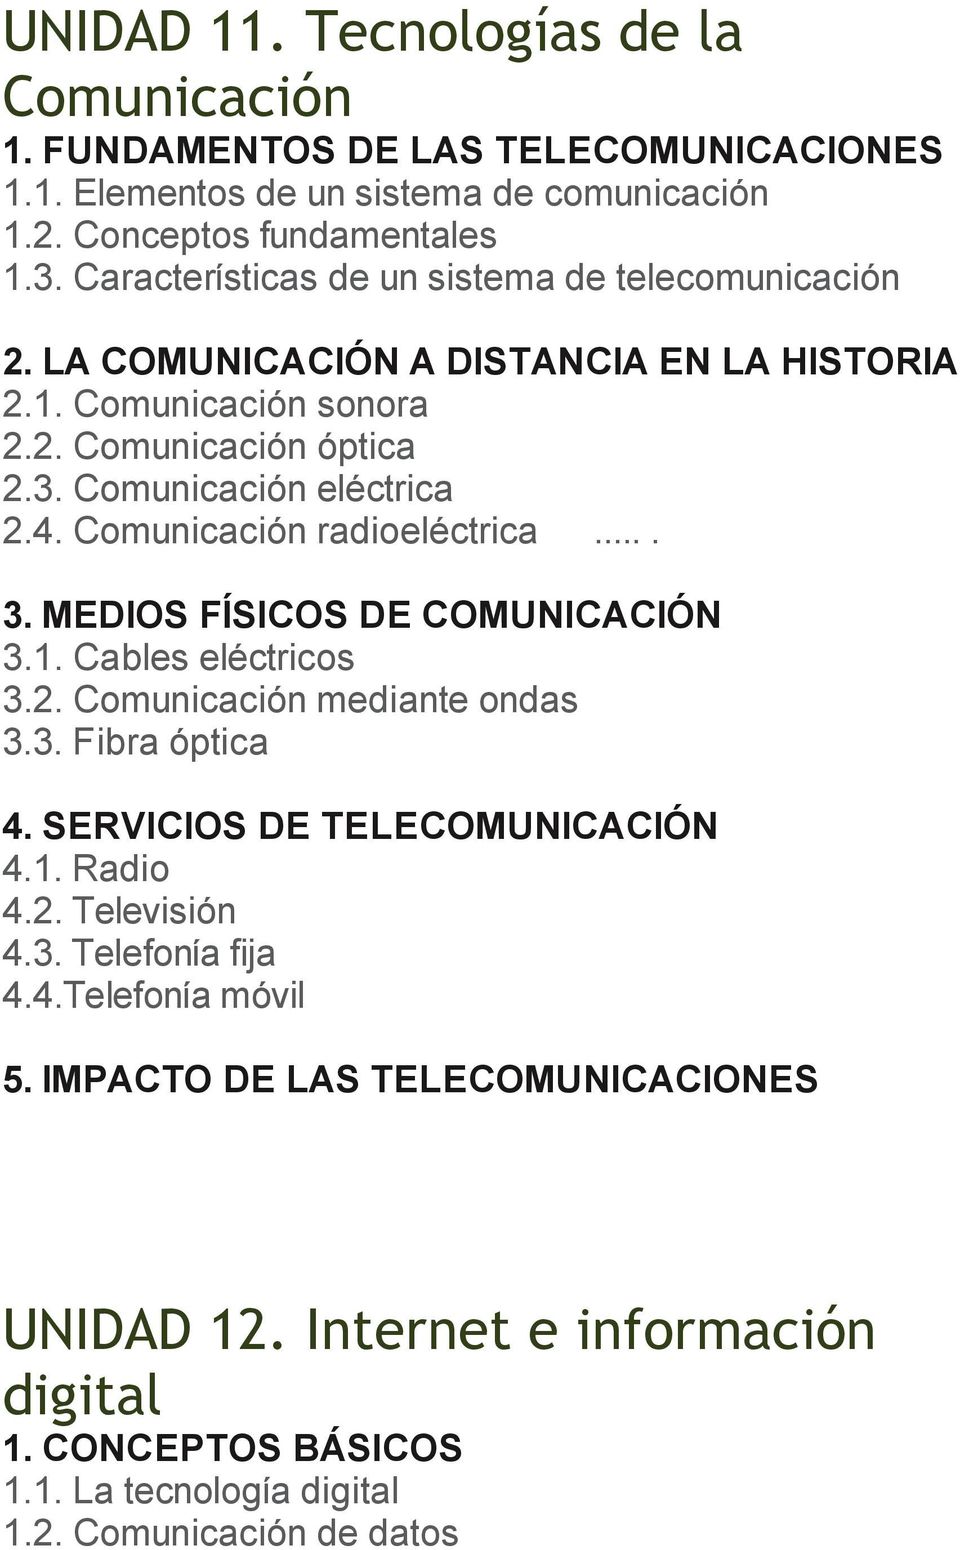 Comunicación radioeléctrica.... 3. MEDIOS FÍSICOS DE COMUNICACIÓN 3.1. Cables eléctricos 3.2. Comunicación mediante ondas 3.3. Fibra óptica 4. SERVICIOS DE TELECOMUNICACIÓN 4.1. Radio 4.